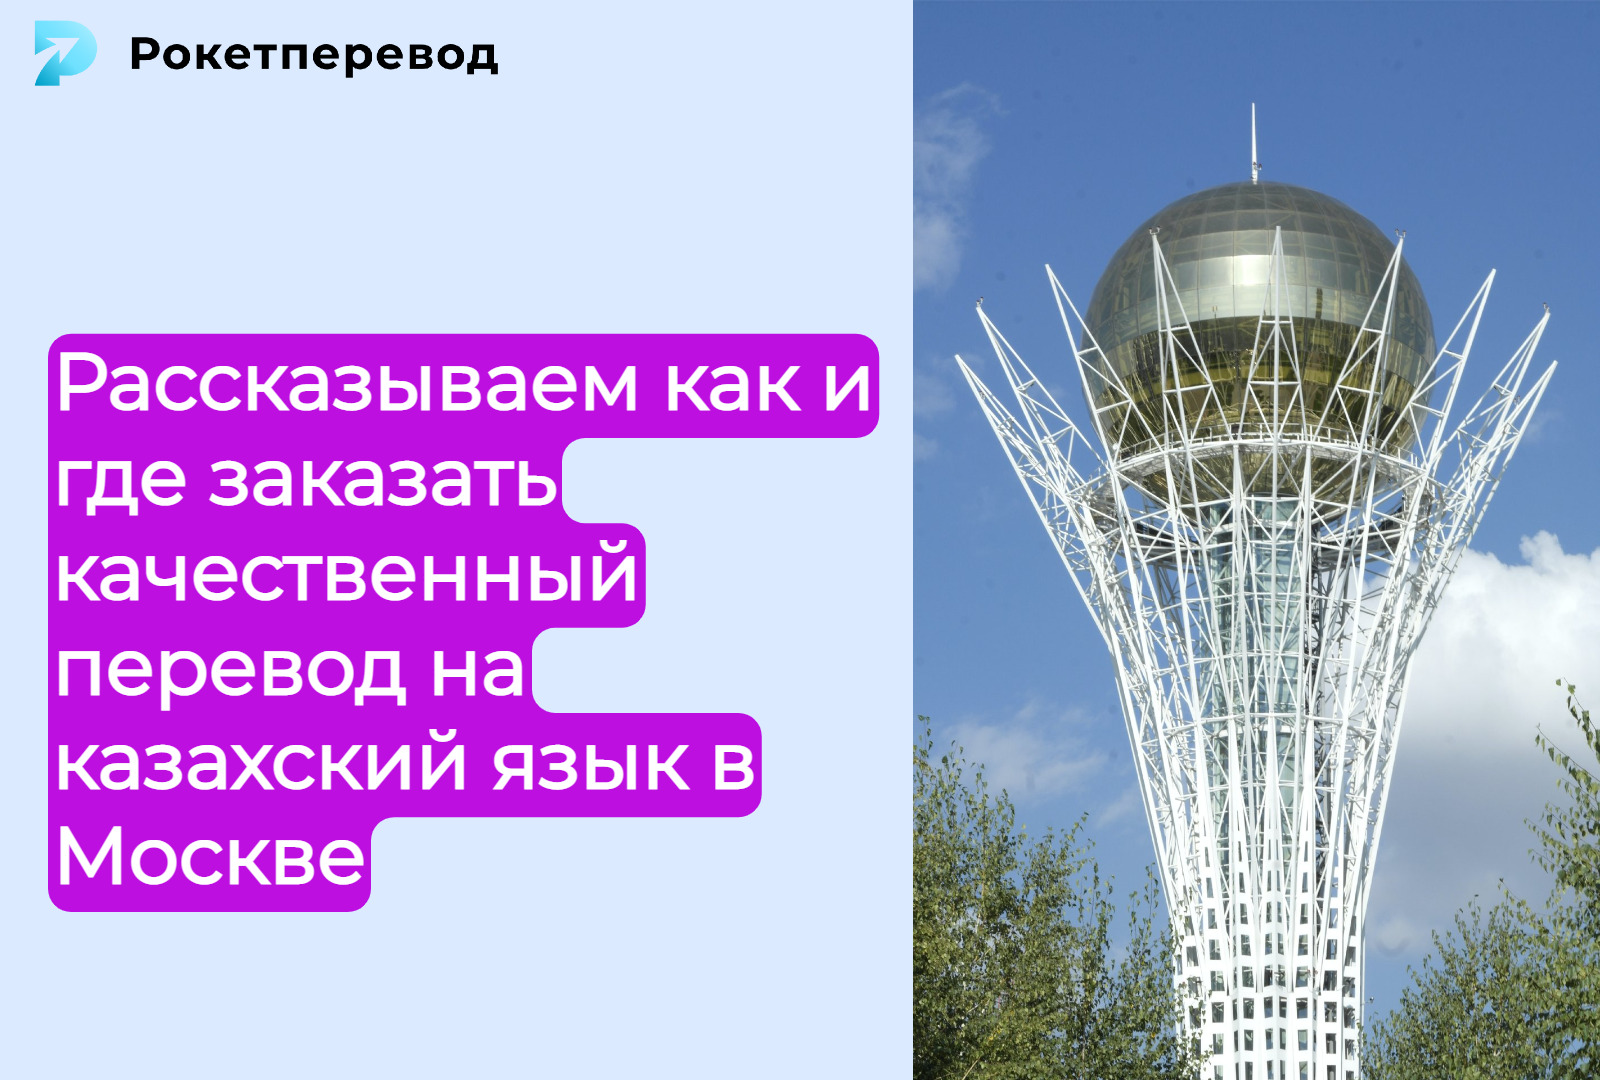 Вы сейчас просматриваете Как заказать качественный перевод на казахский язык в Москве